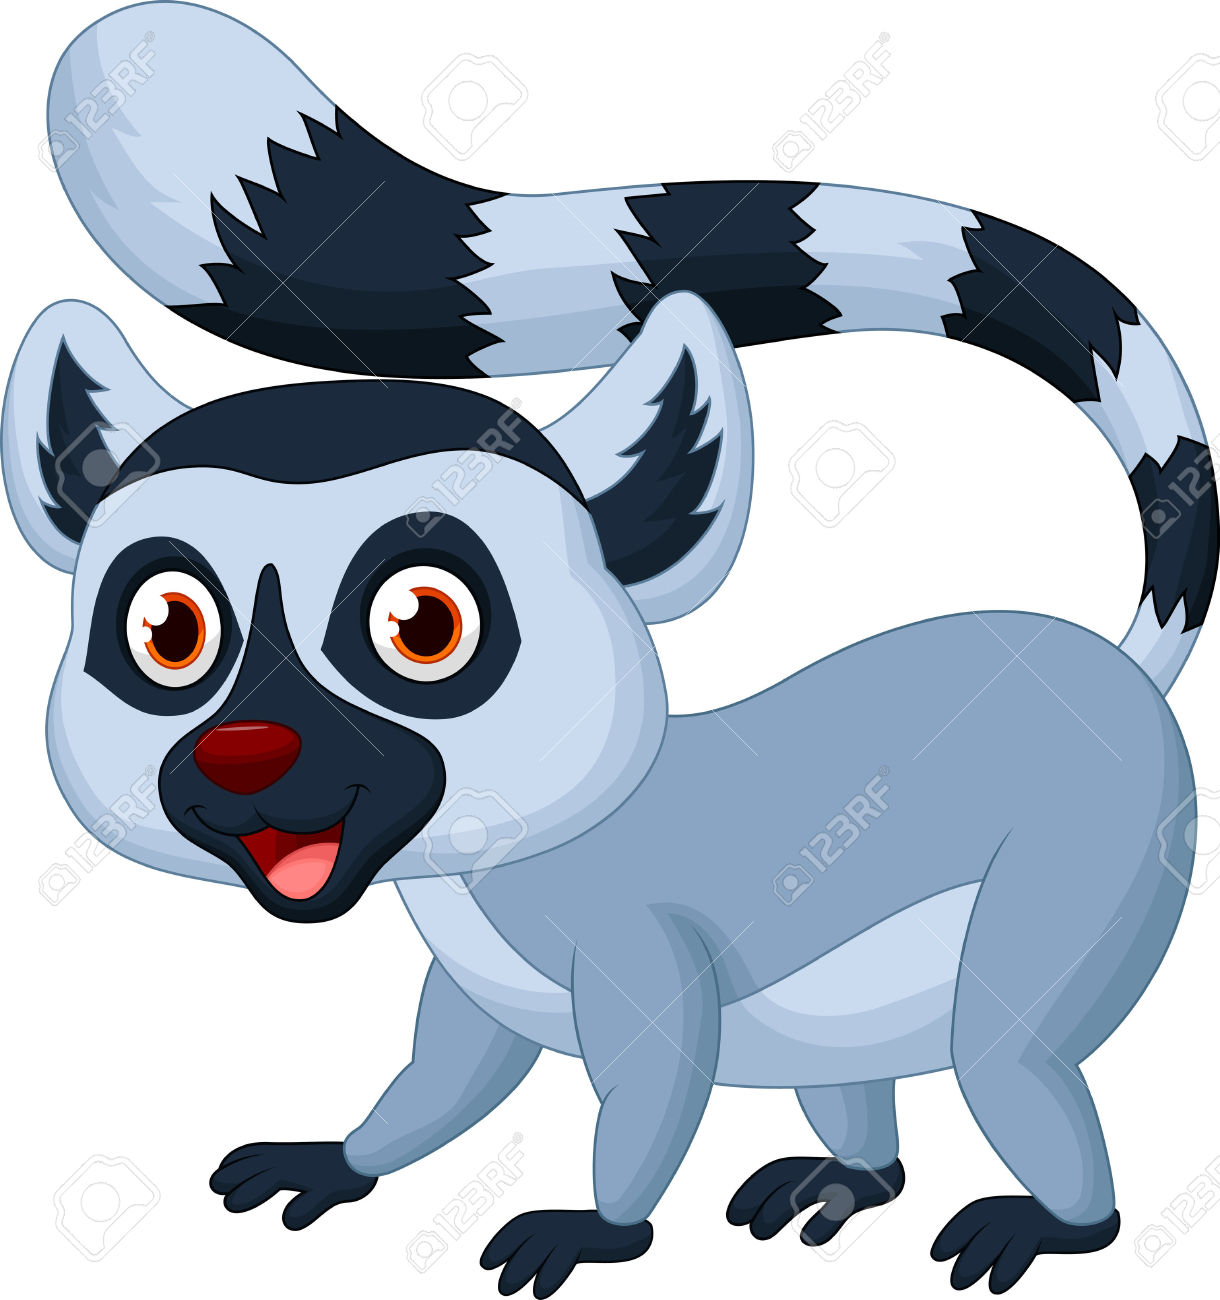 Cute Lemur Cartoon Royalty Free Cliparts, Vectors, And Stock.